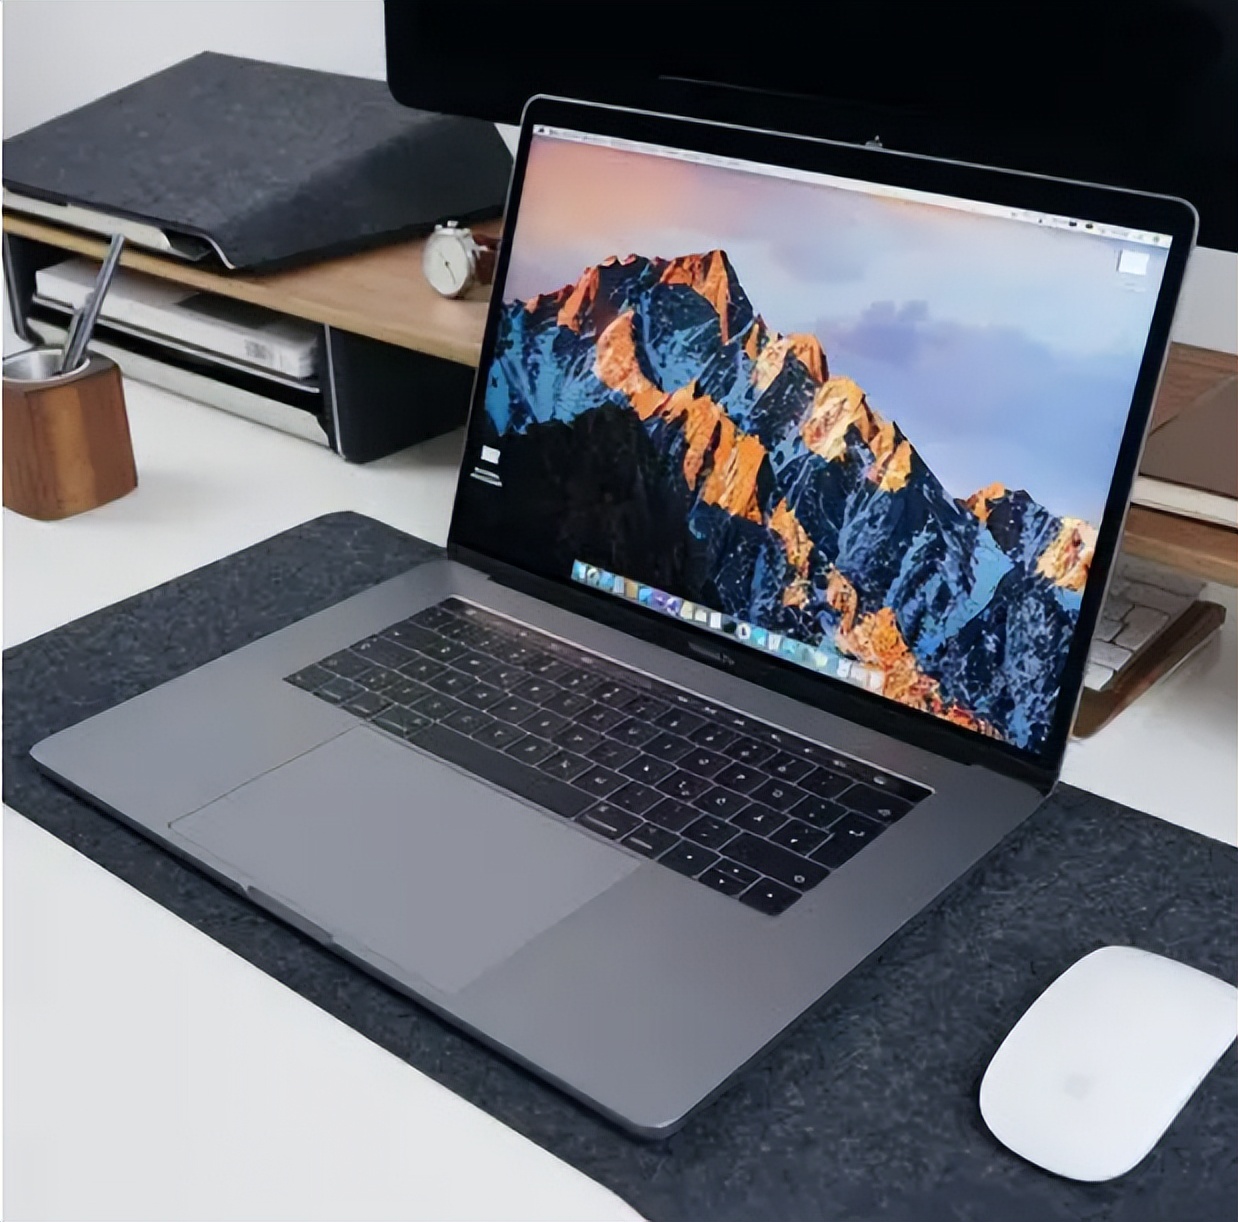 ThinkPad笔记本到底有何魅力，为何在一些领域比苹果都有名气